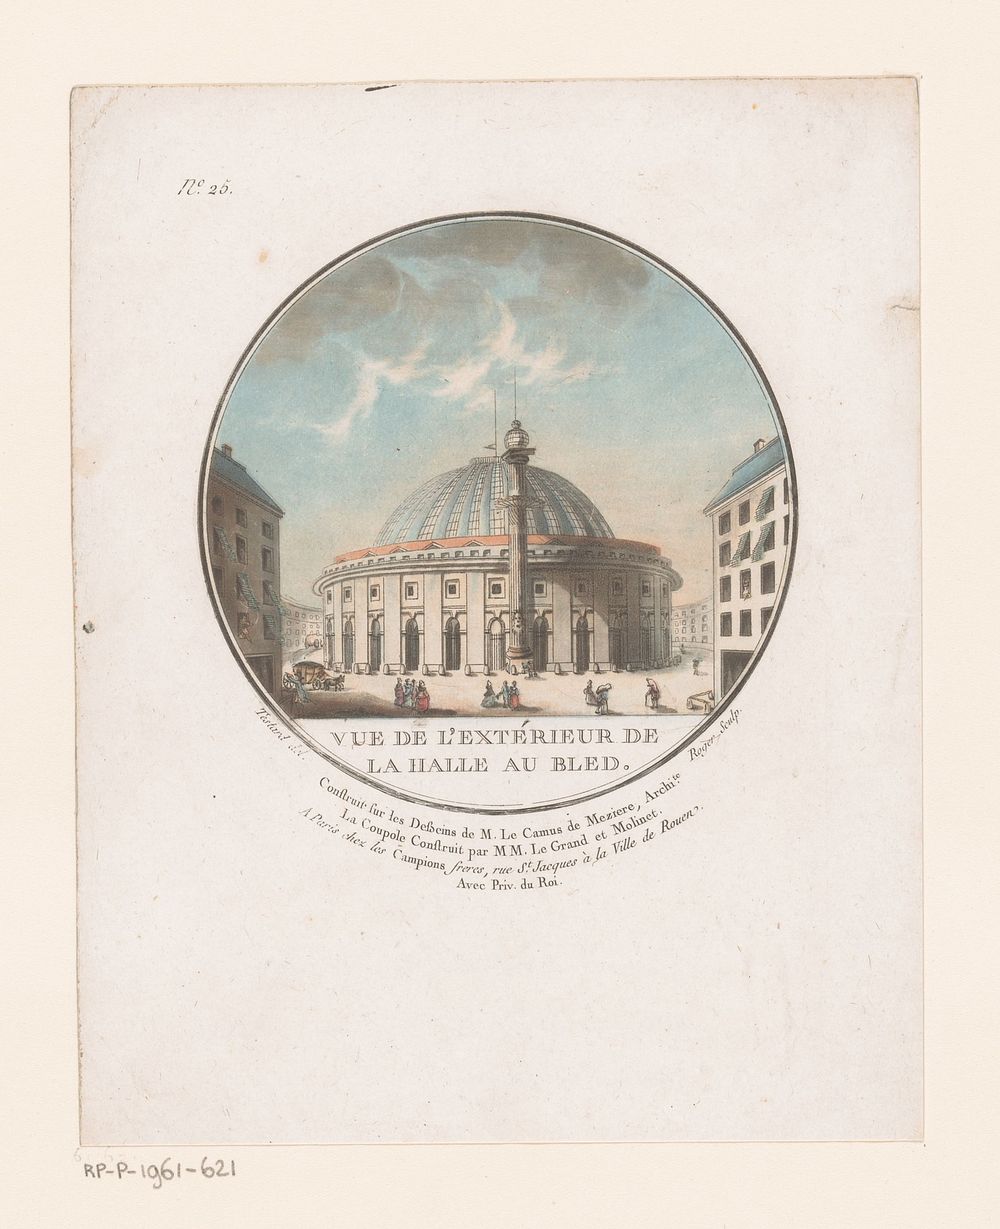 Gezicht op cirkelvormige hal voor maisopslag (c. 1789) by L Roger, Jean Testard, Le Campion Frères and Lodewijk XVI koning…